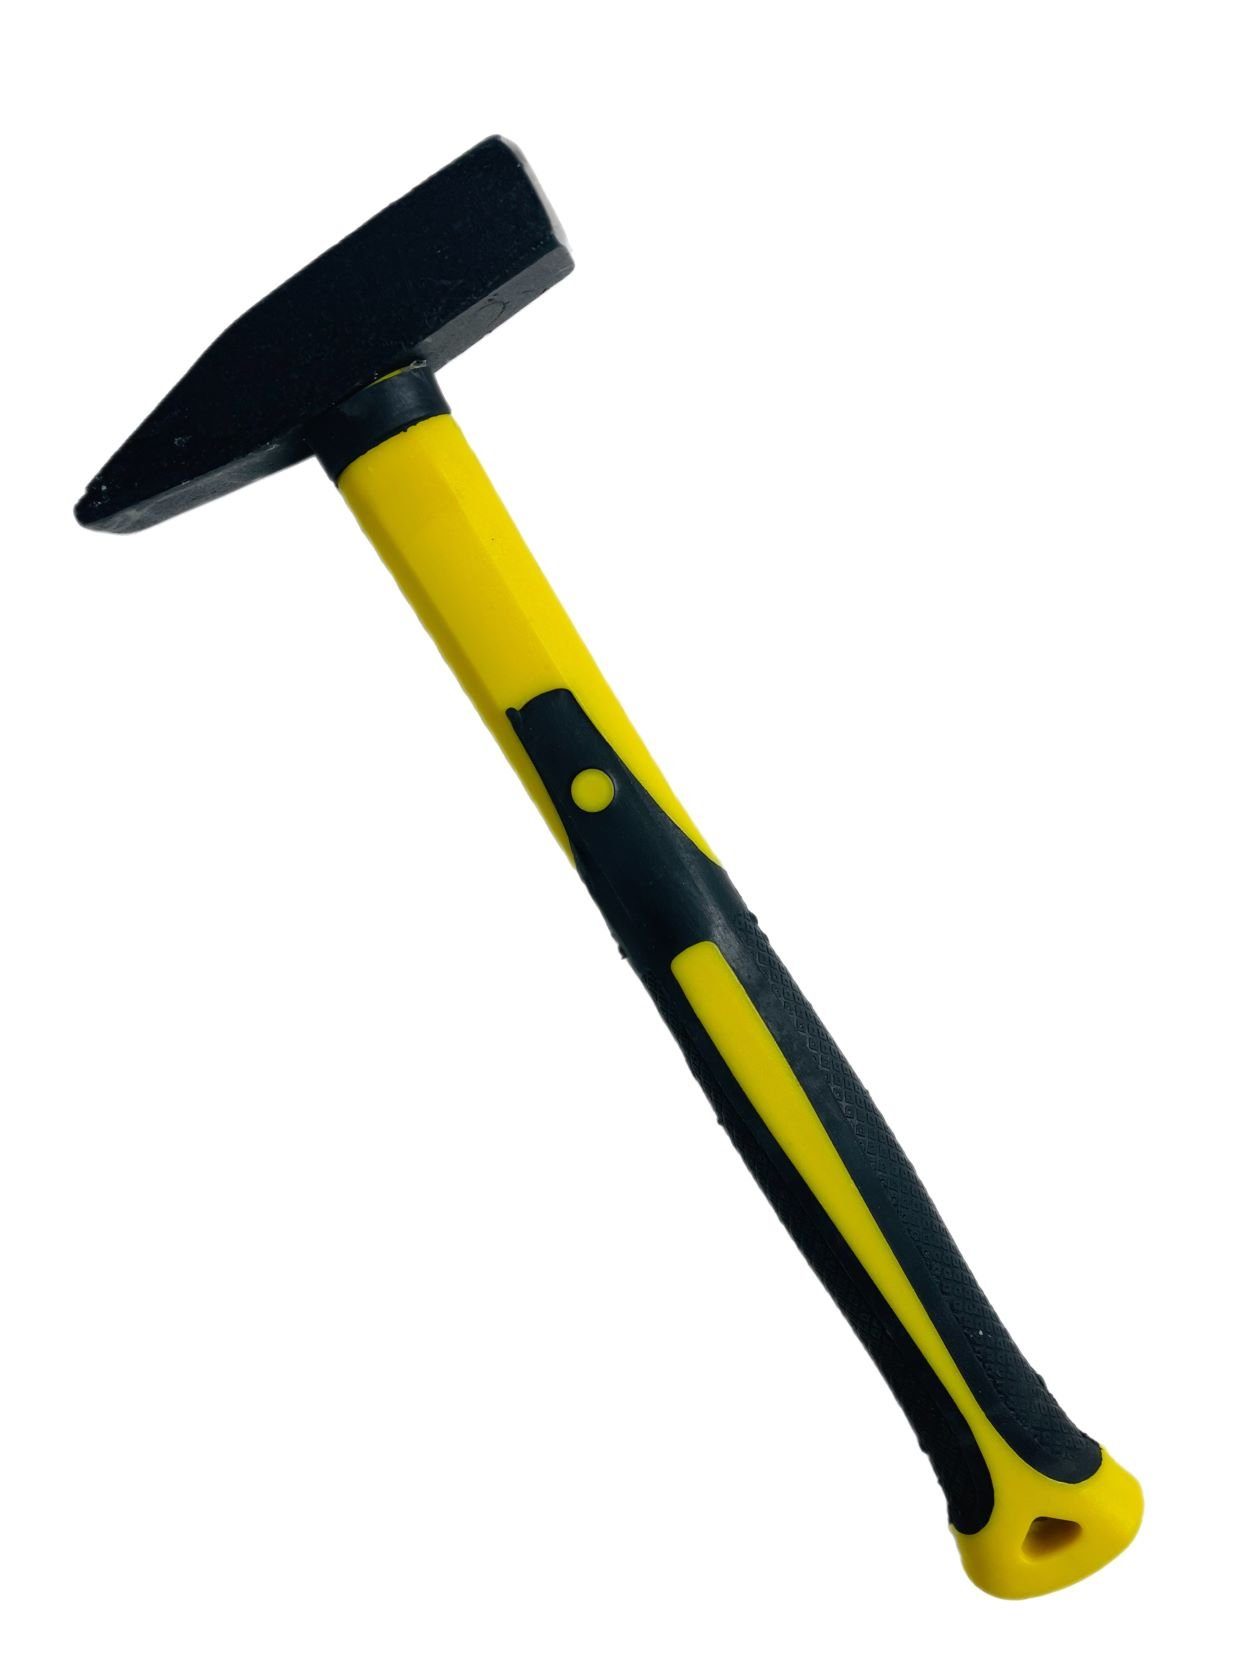 Schlosserhammer Hammer Hammer Fiberglasstiel VaGo-Tools 800g